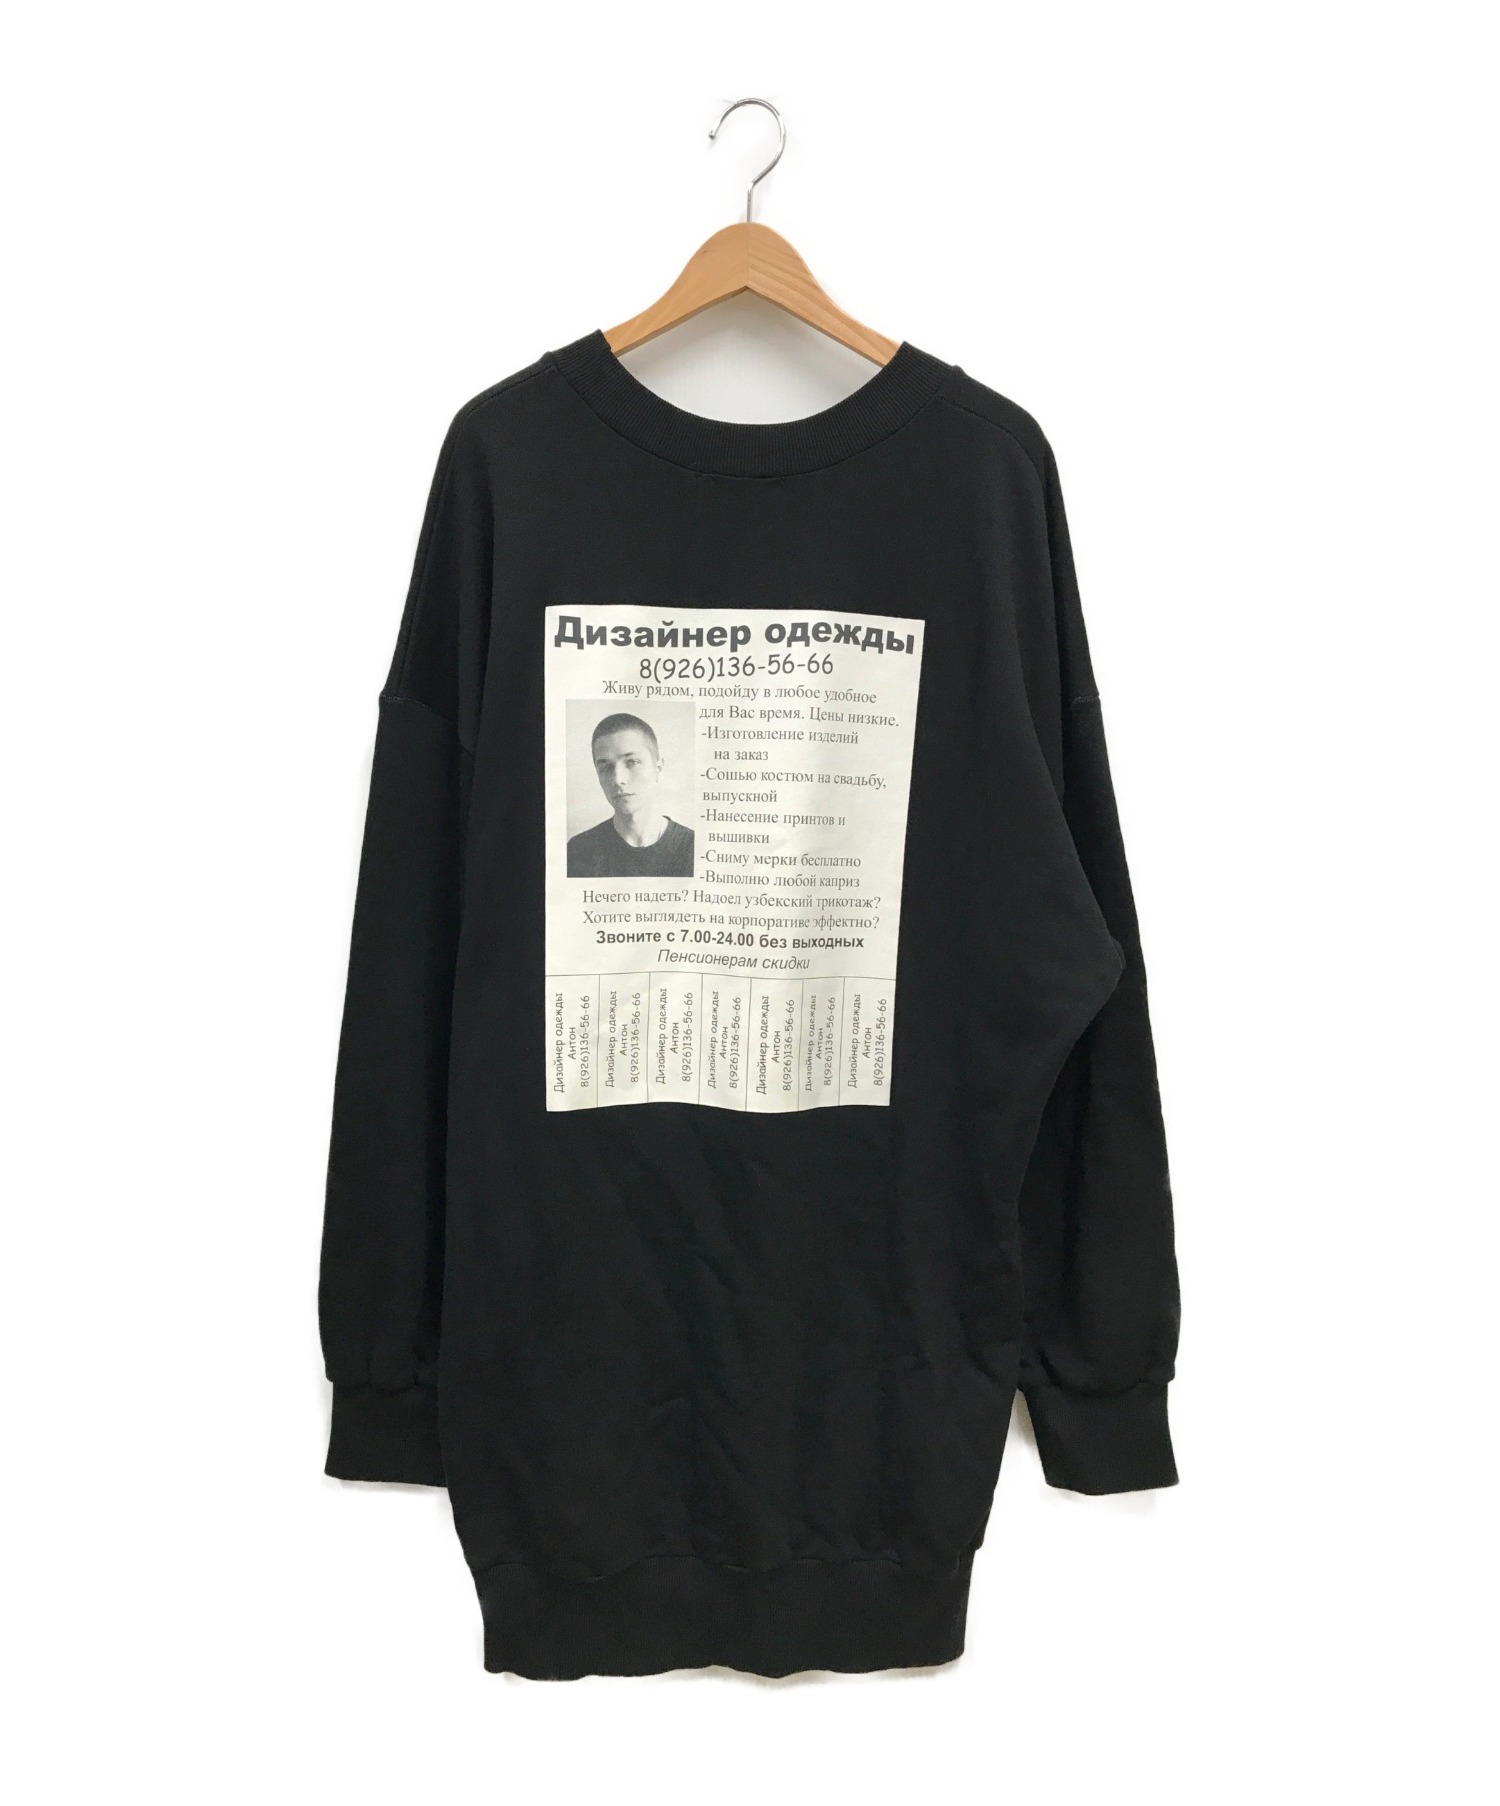 ANTON LISIN (アントンリシン) デザイナープリントスウェットシャツ ブラック サイズ:M SWEATSHIRT DESIGNER PRINT